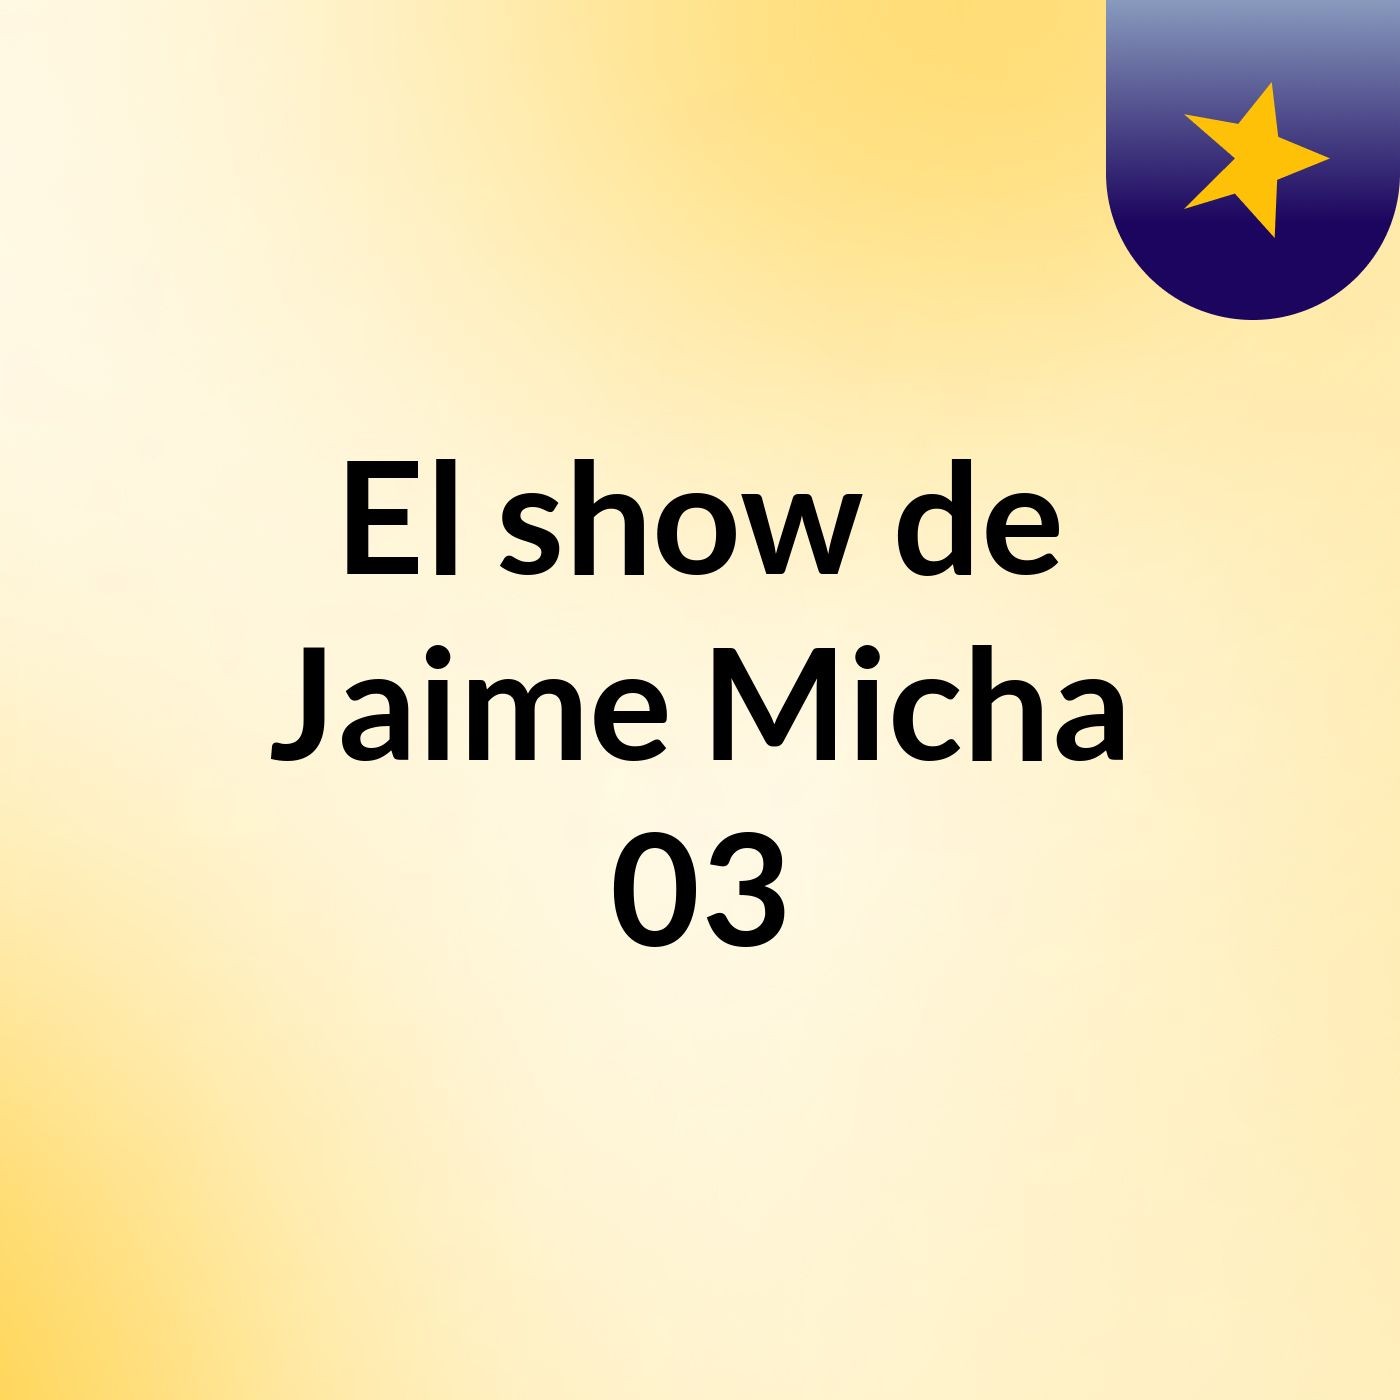 El show de Jaime Micha 03